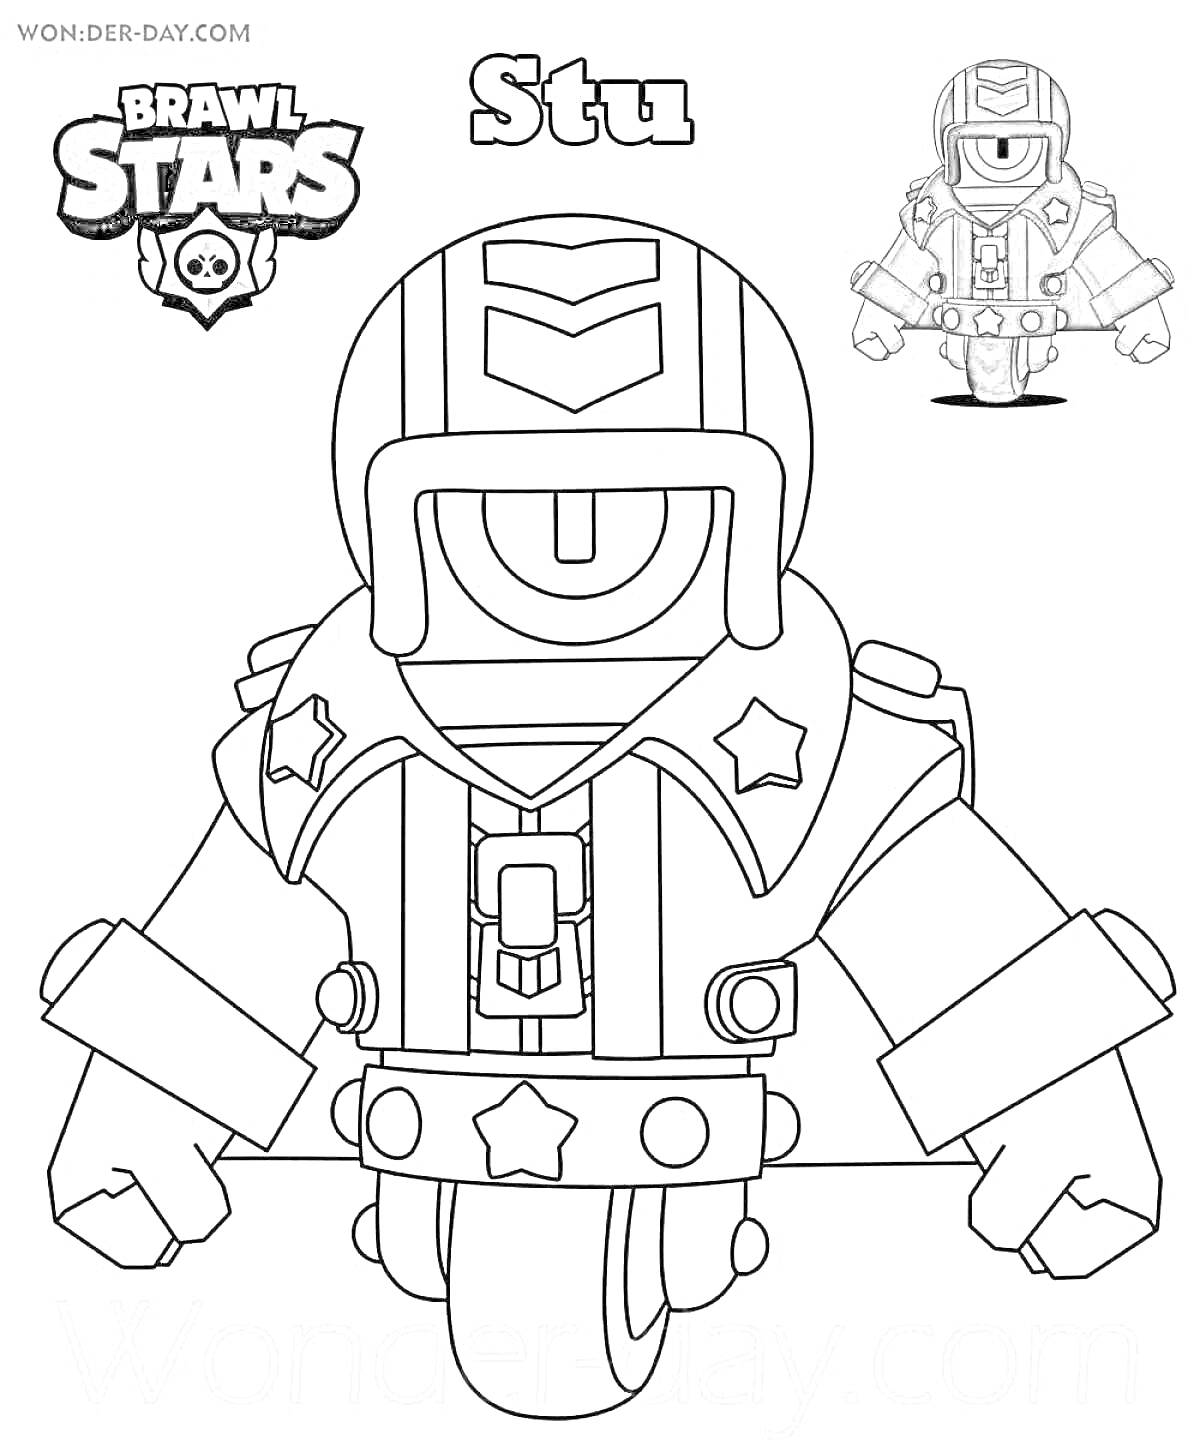 Раскраска Стю из игры Brawl Stars в защитной экипировке, стоящий на мотоцикле